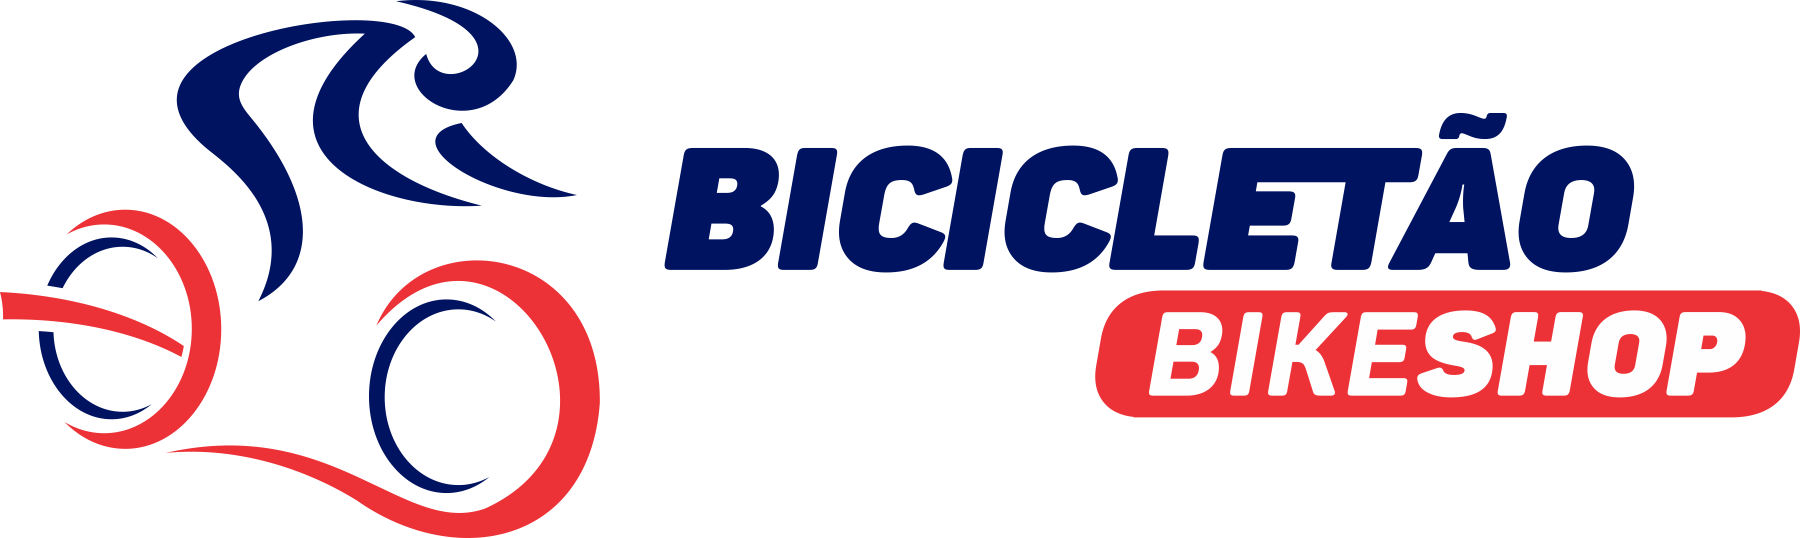 Bicicletao BikeShop